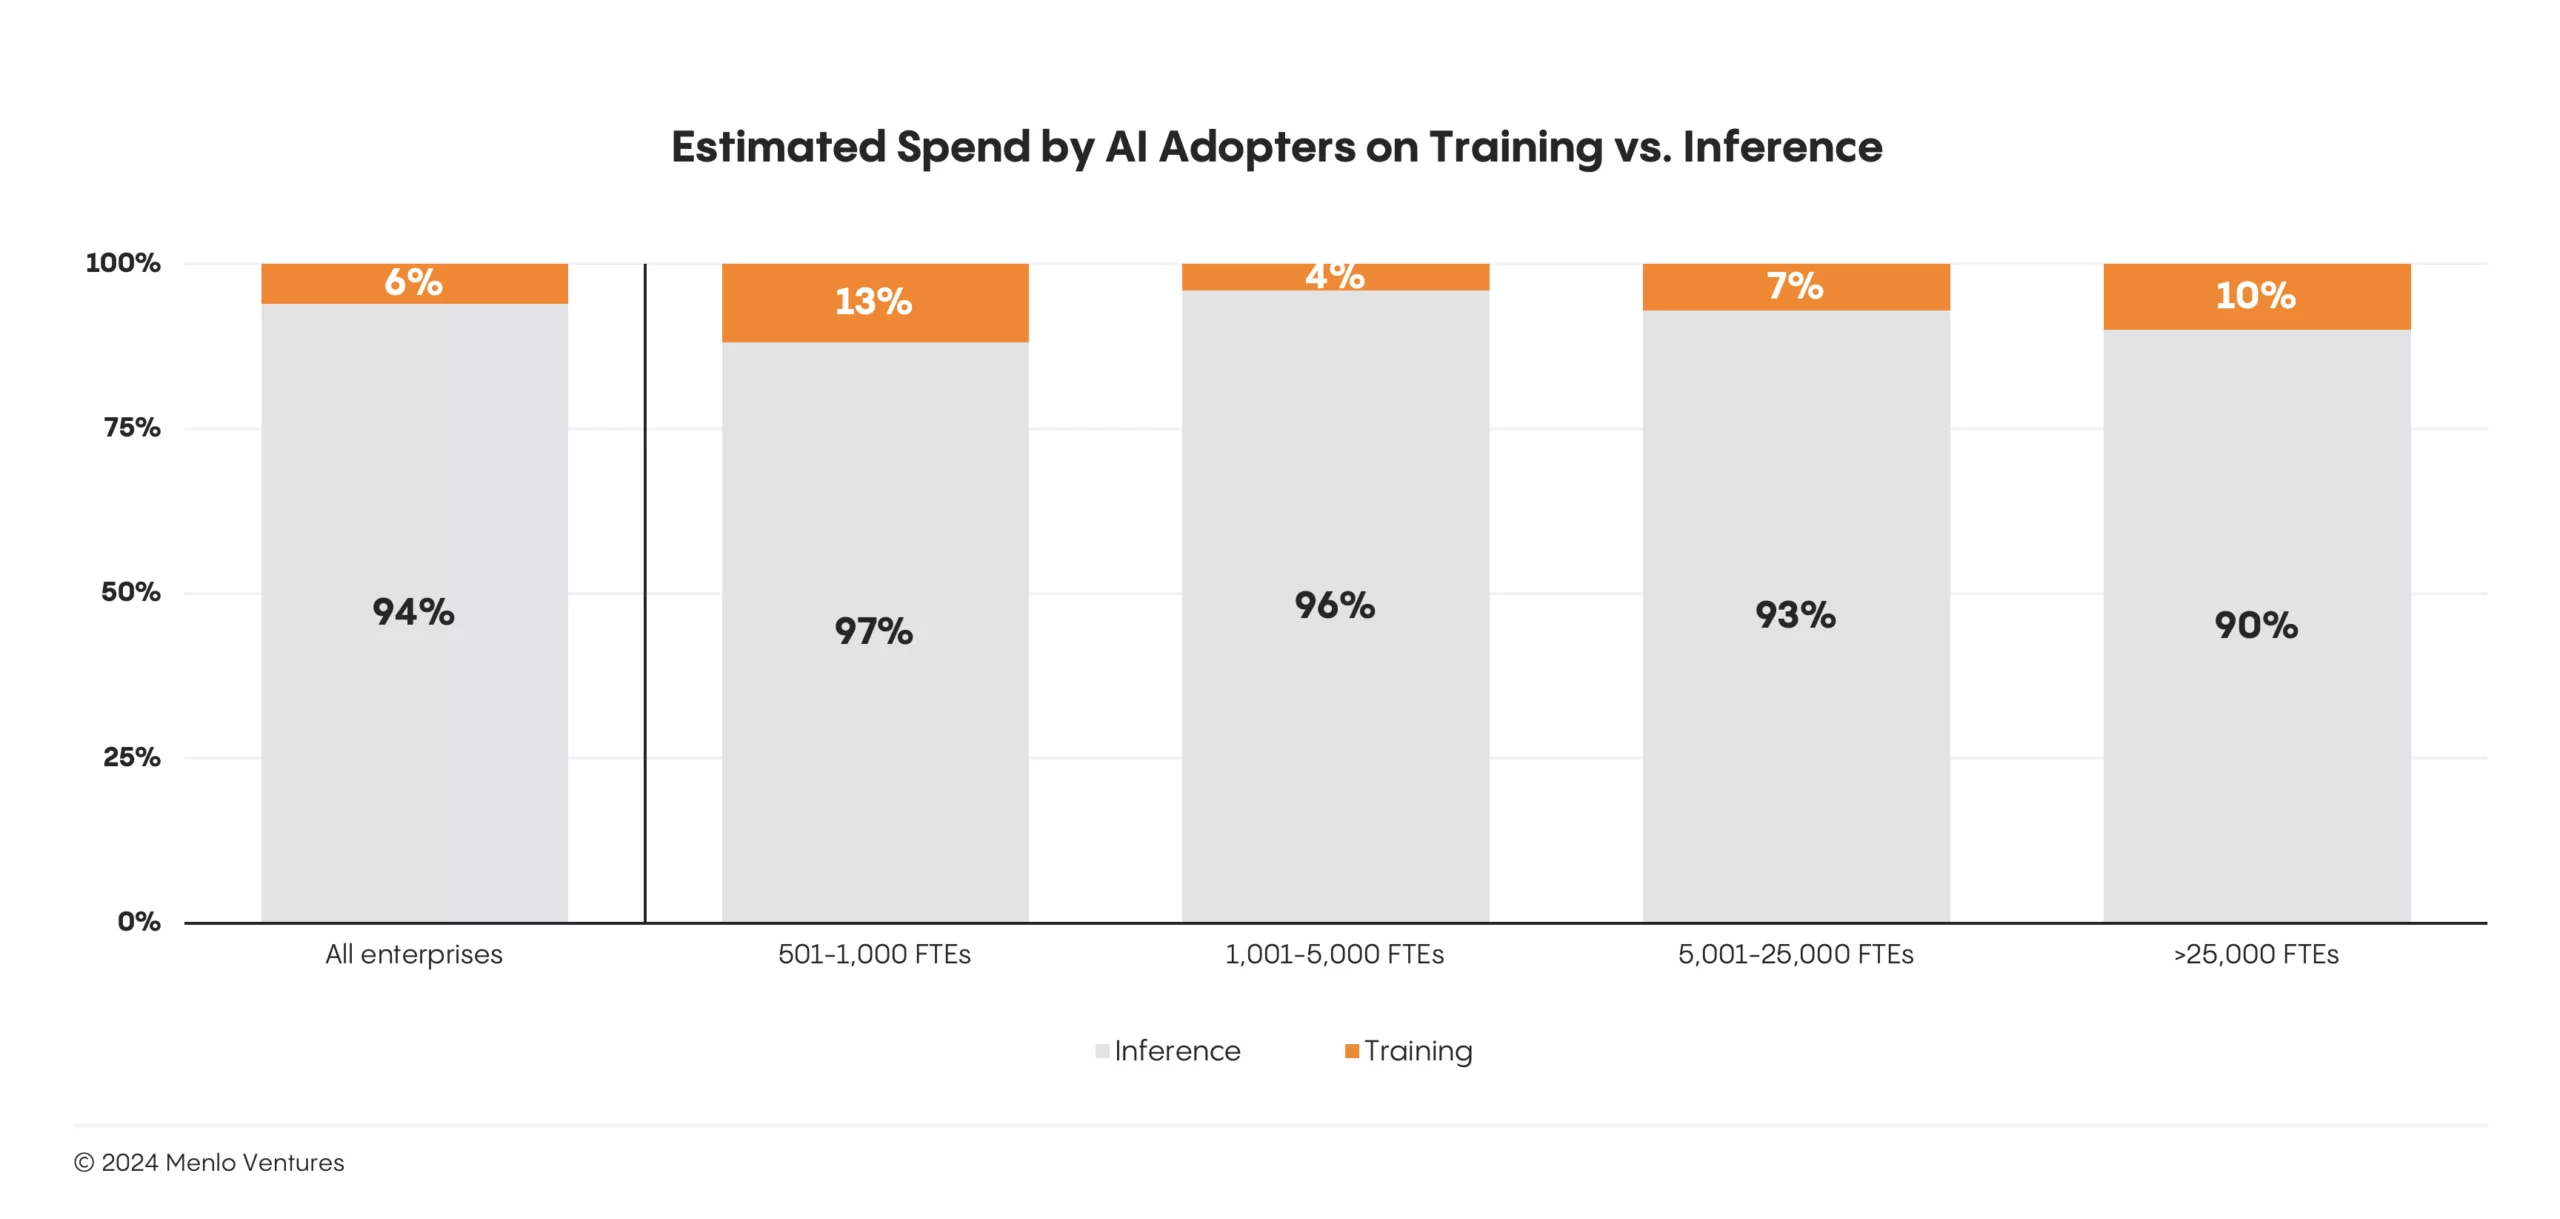 展示 AI 采纳者在训练与推理上的预计支出的图表